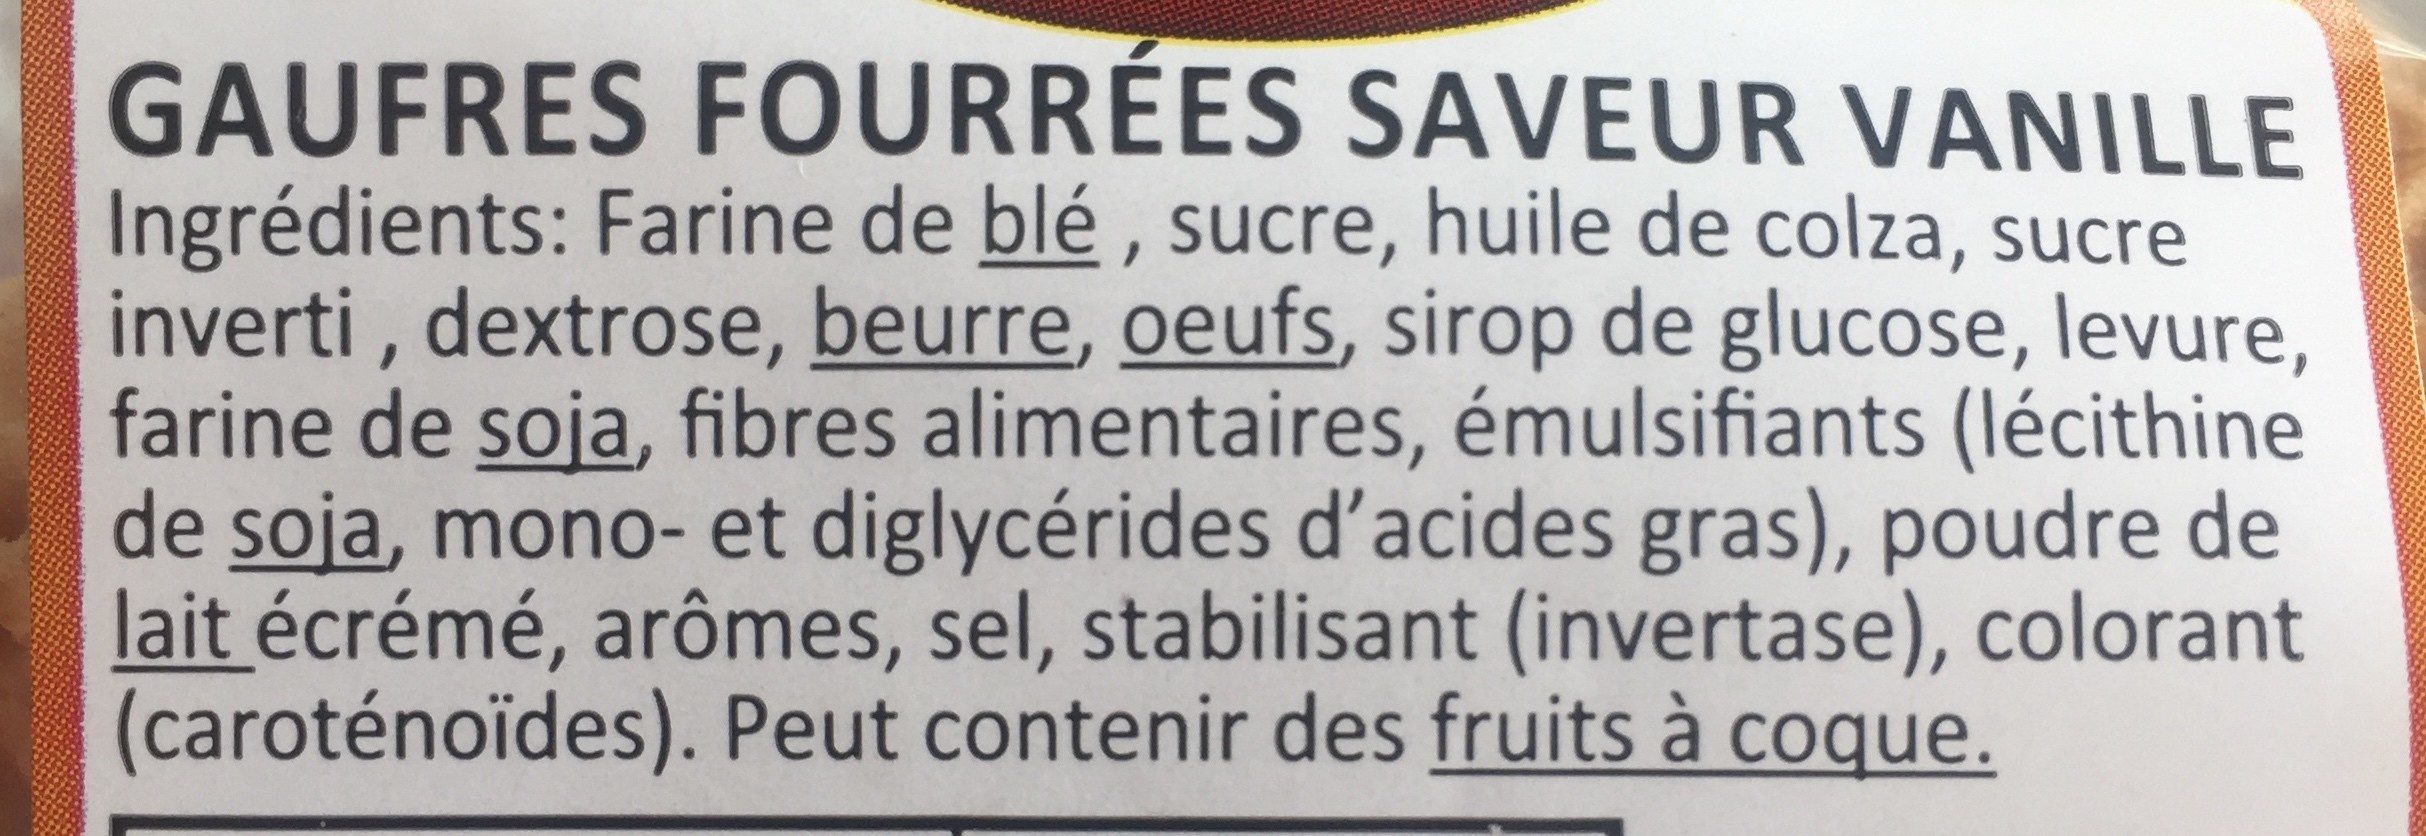 Gaufres Fourrées Saveur Vanille - Ingrédients